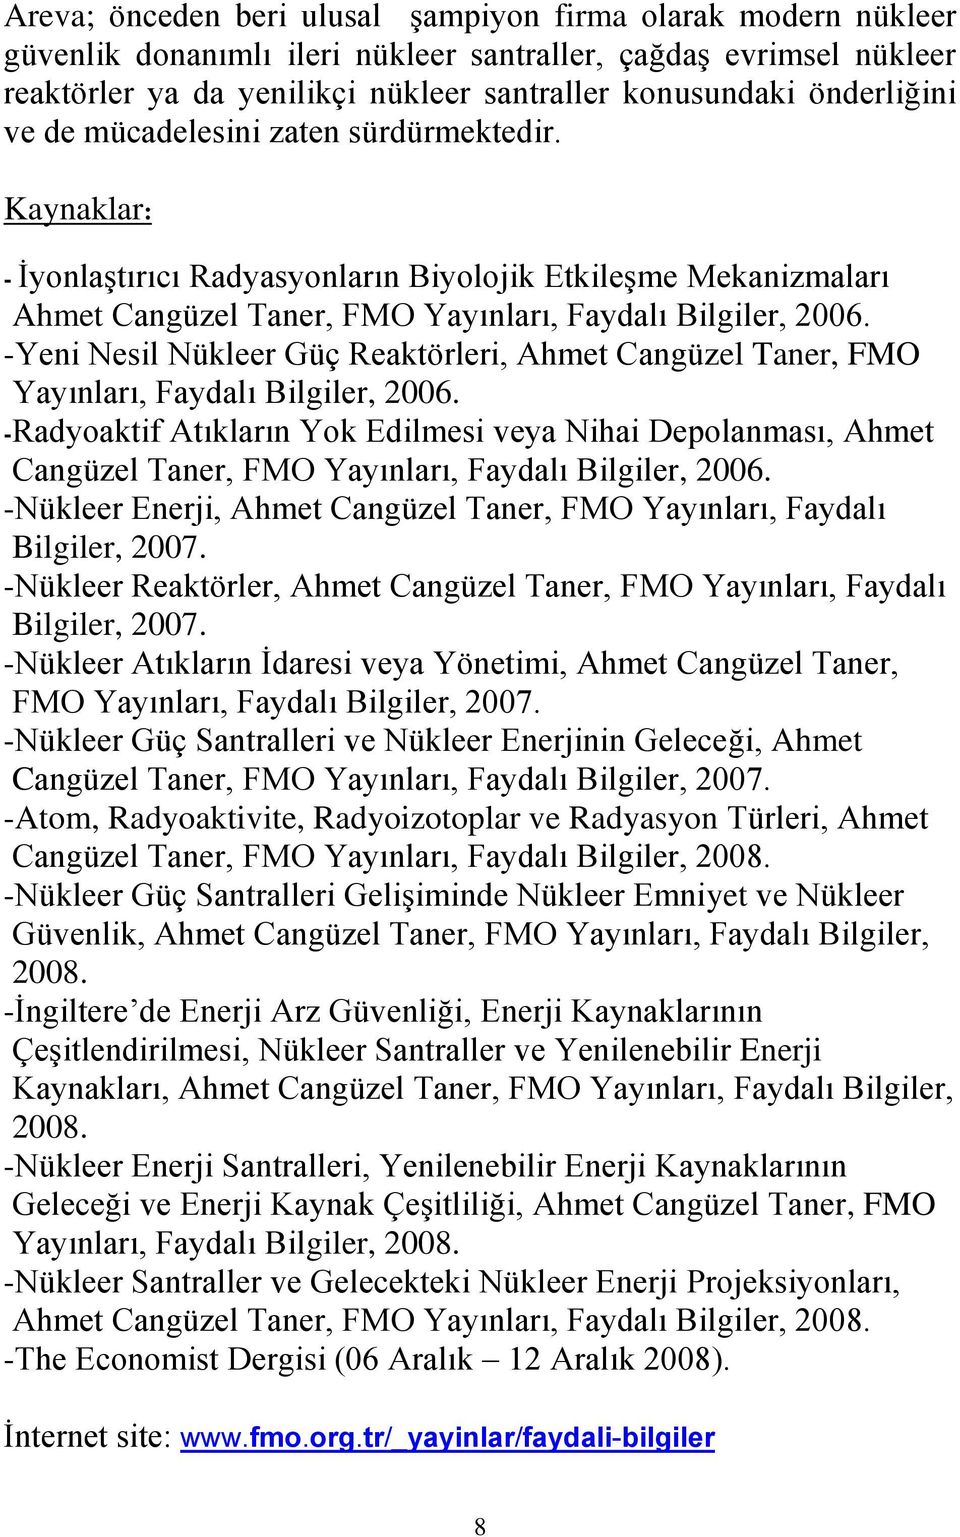 -Yeni Nesil Nükleer Güç Reaktörleri, Ahmet Cangüzel Taner, FMO Yayınları, Faydalı Bilgiler, 2006.